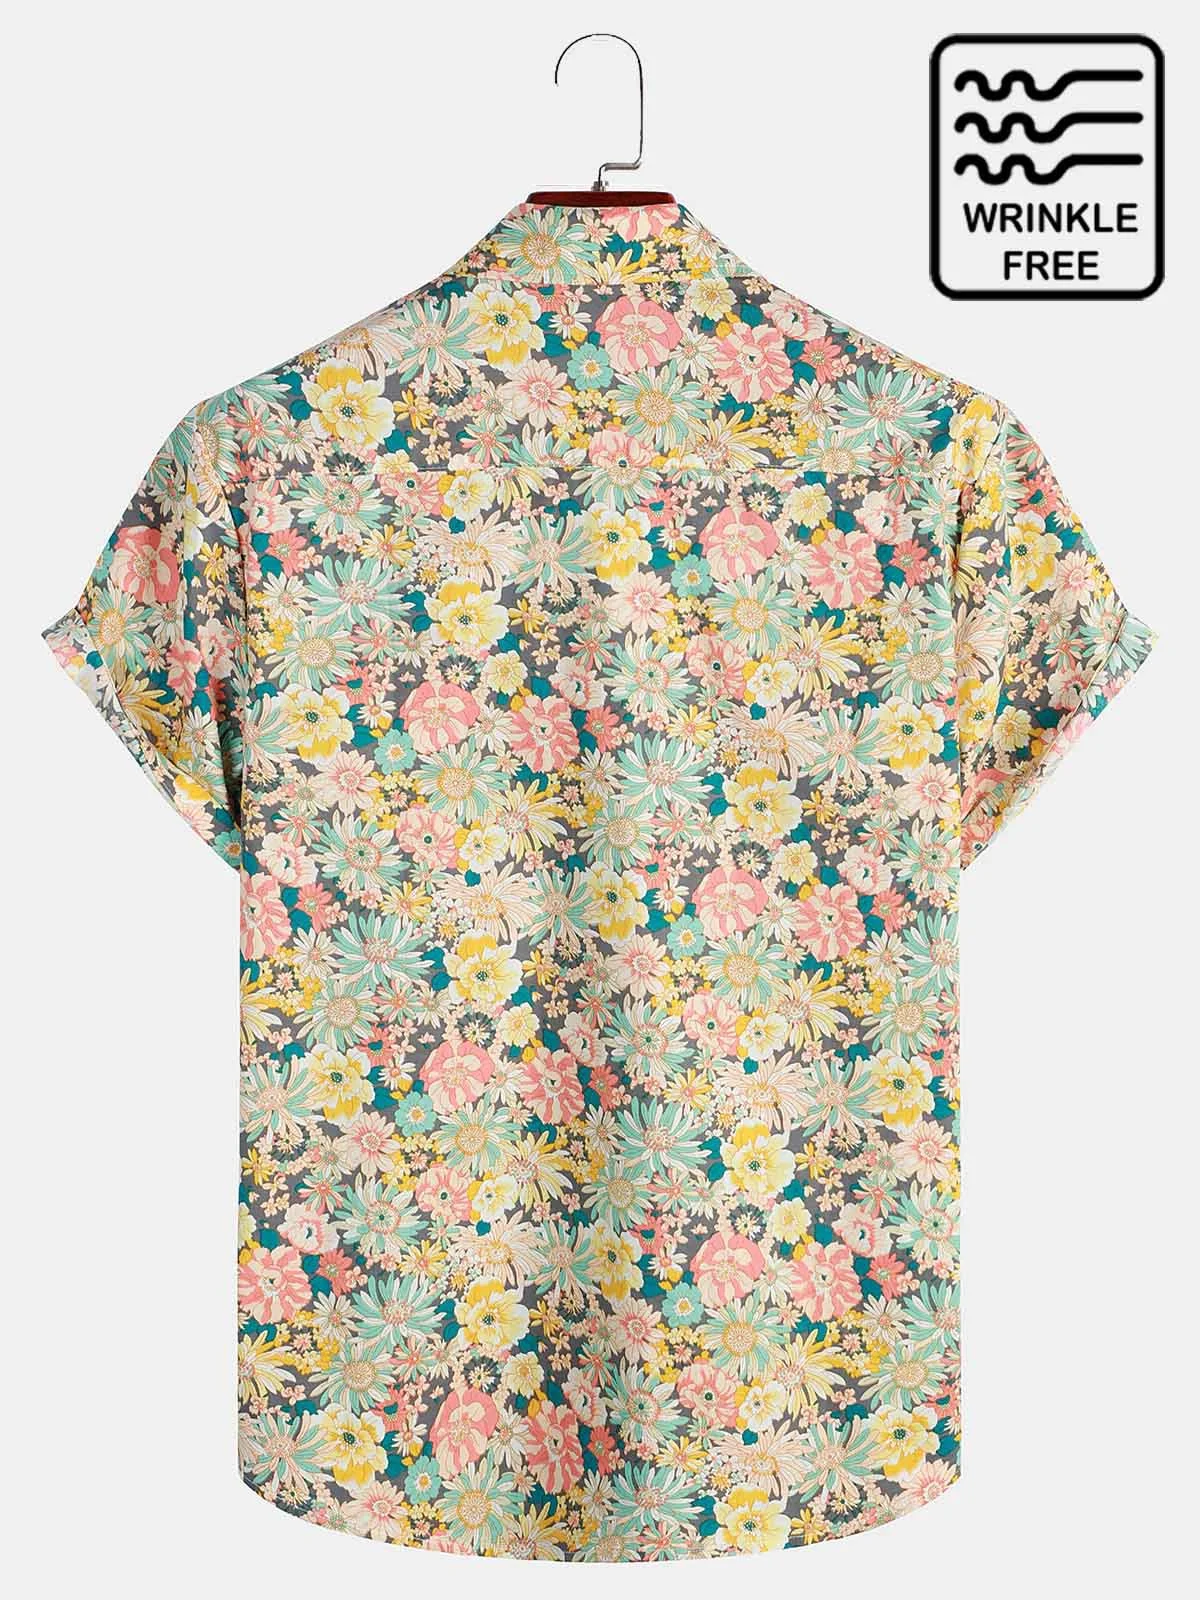 Men's Vintage Casual Wrinkle Free Hawaiian Shirts Floral Print SeersuckerPlus Size Tops